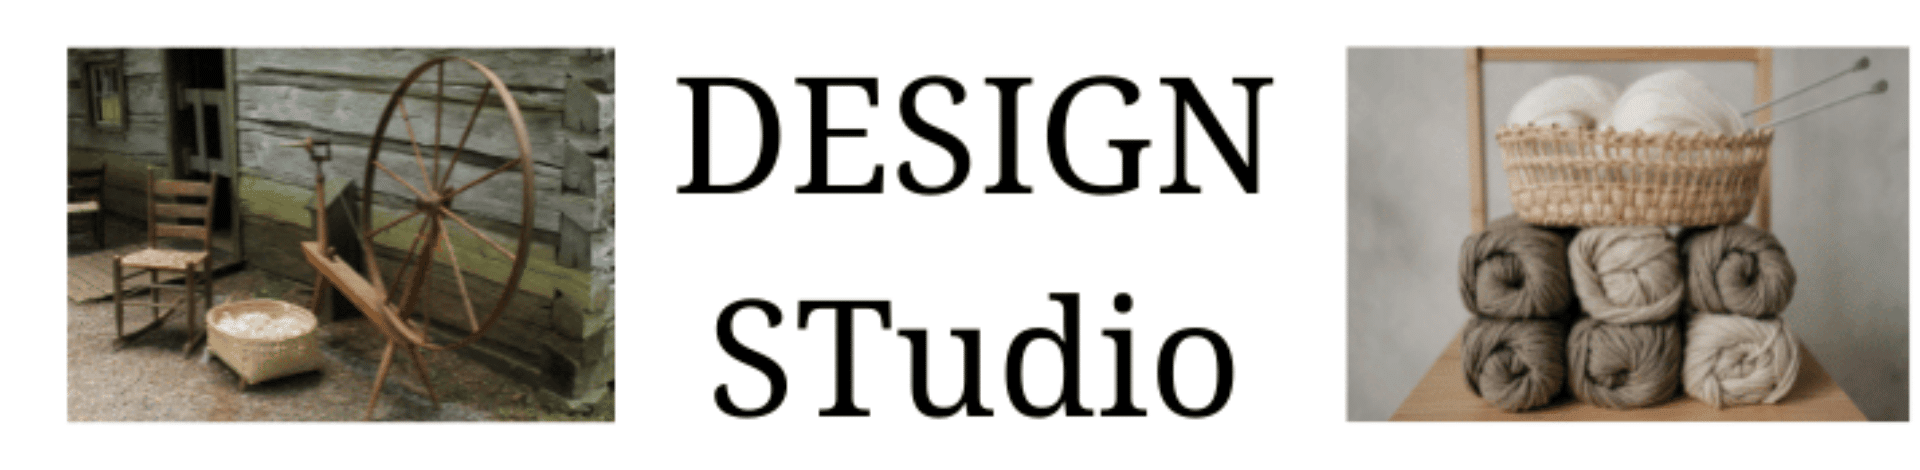 Lakota Design Studio